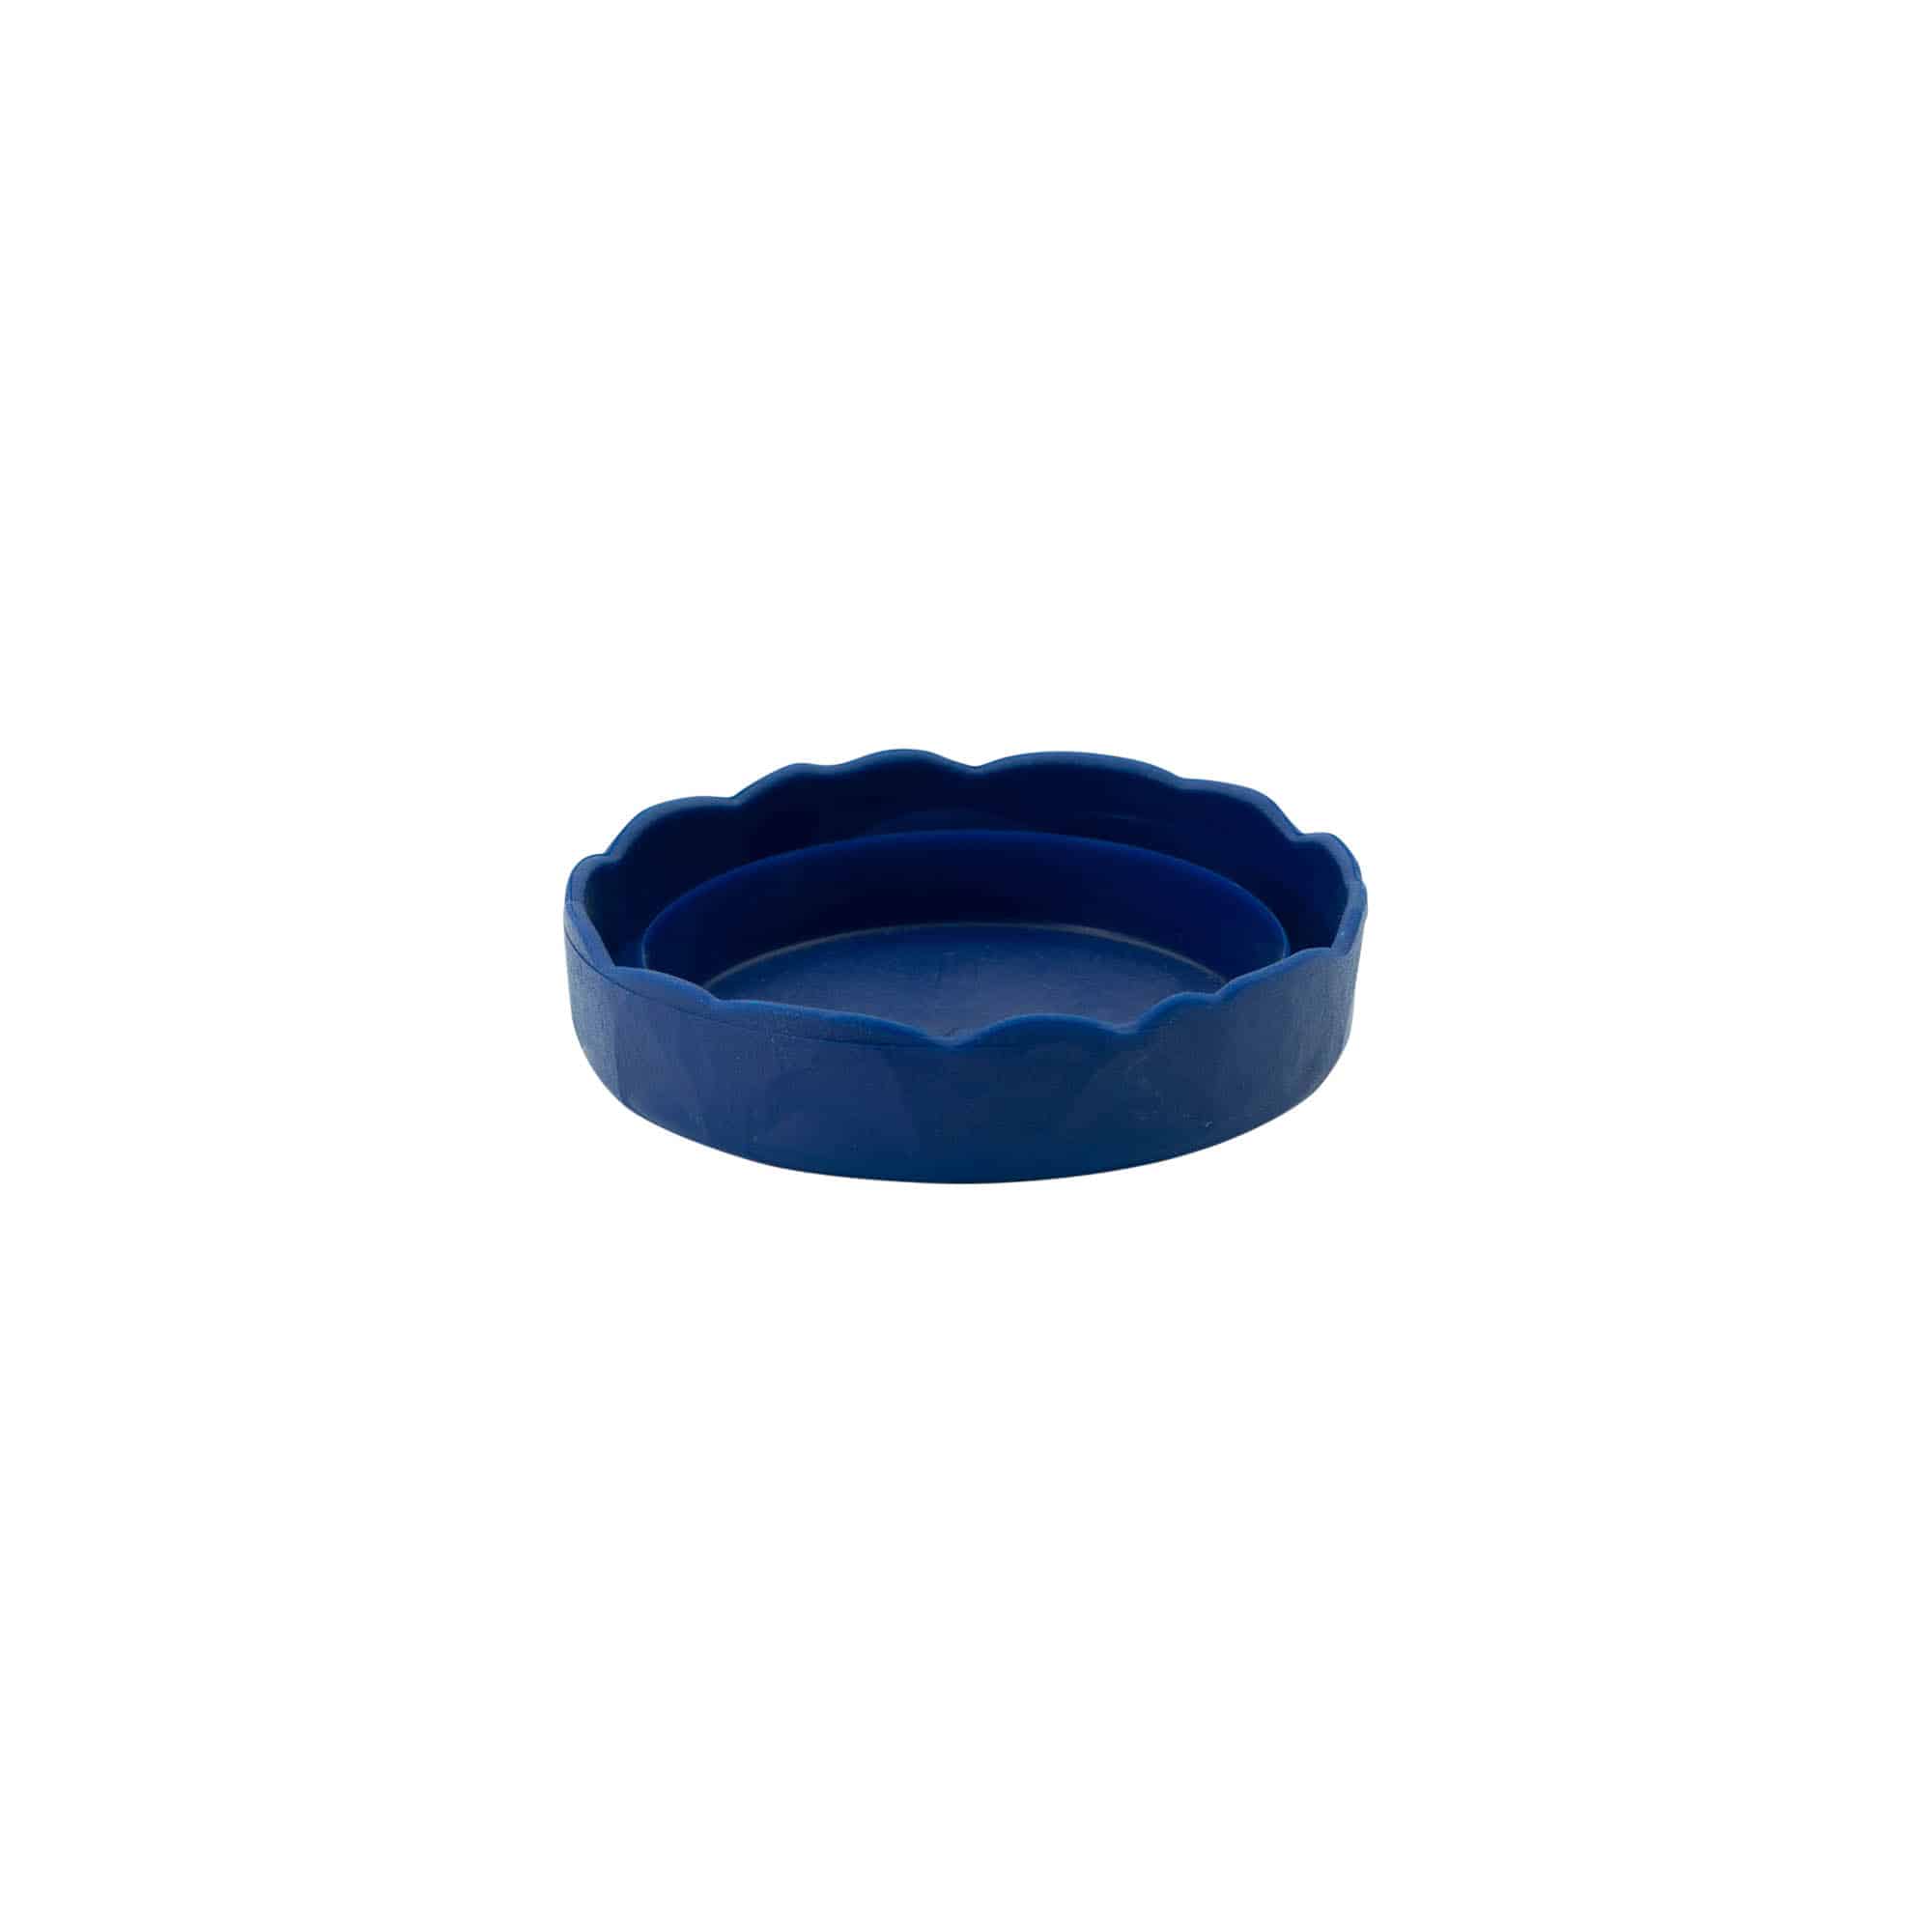 Nasazovací víko pro keramický hrnec s úzkým hrdlem, plast HDPE, modré